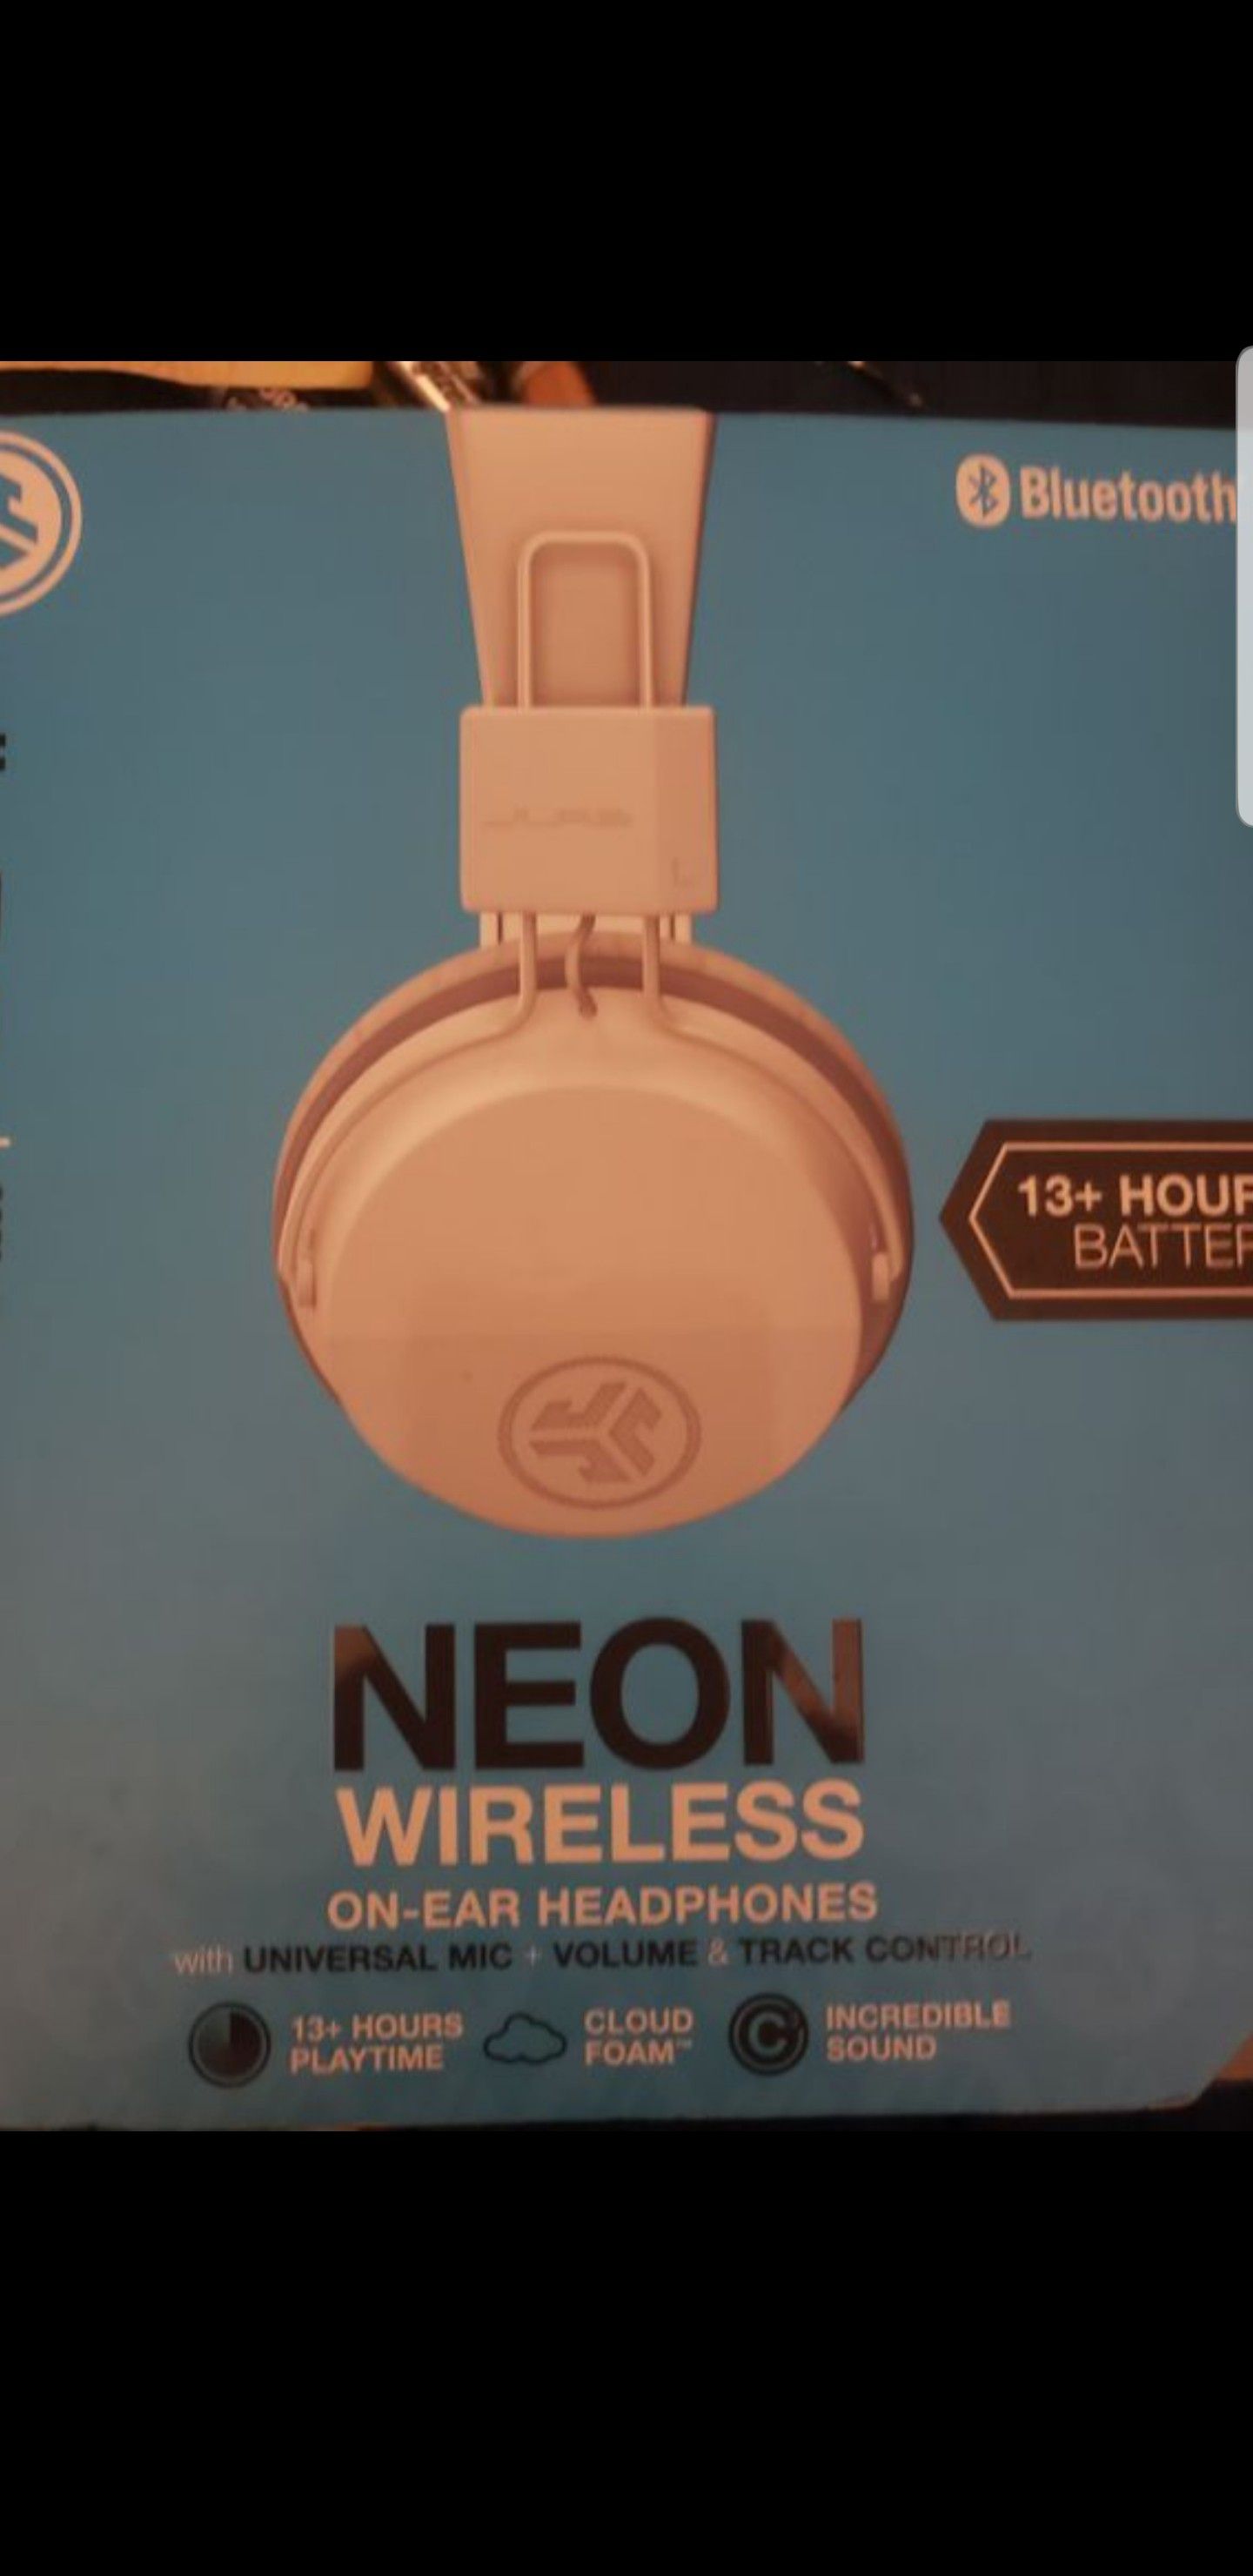 Neon ear headphones